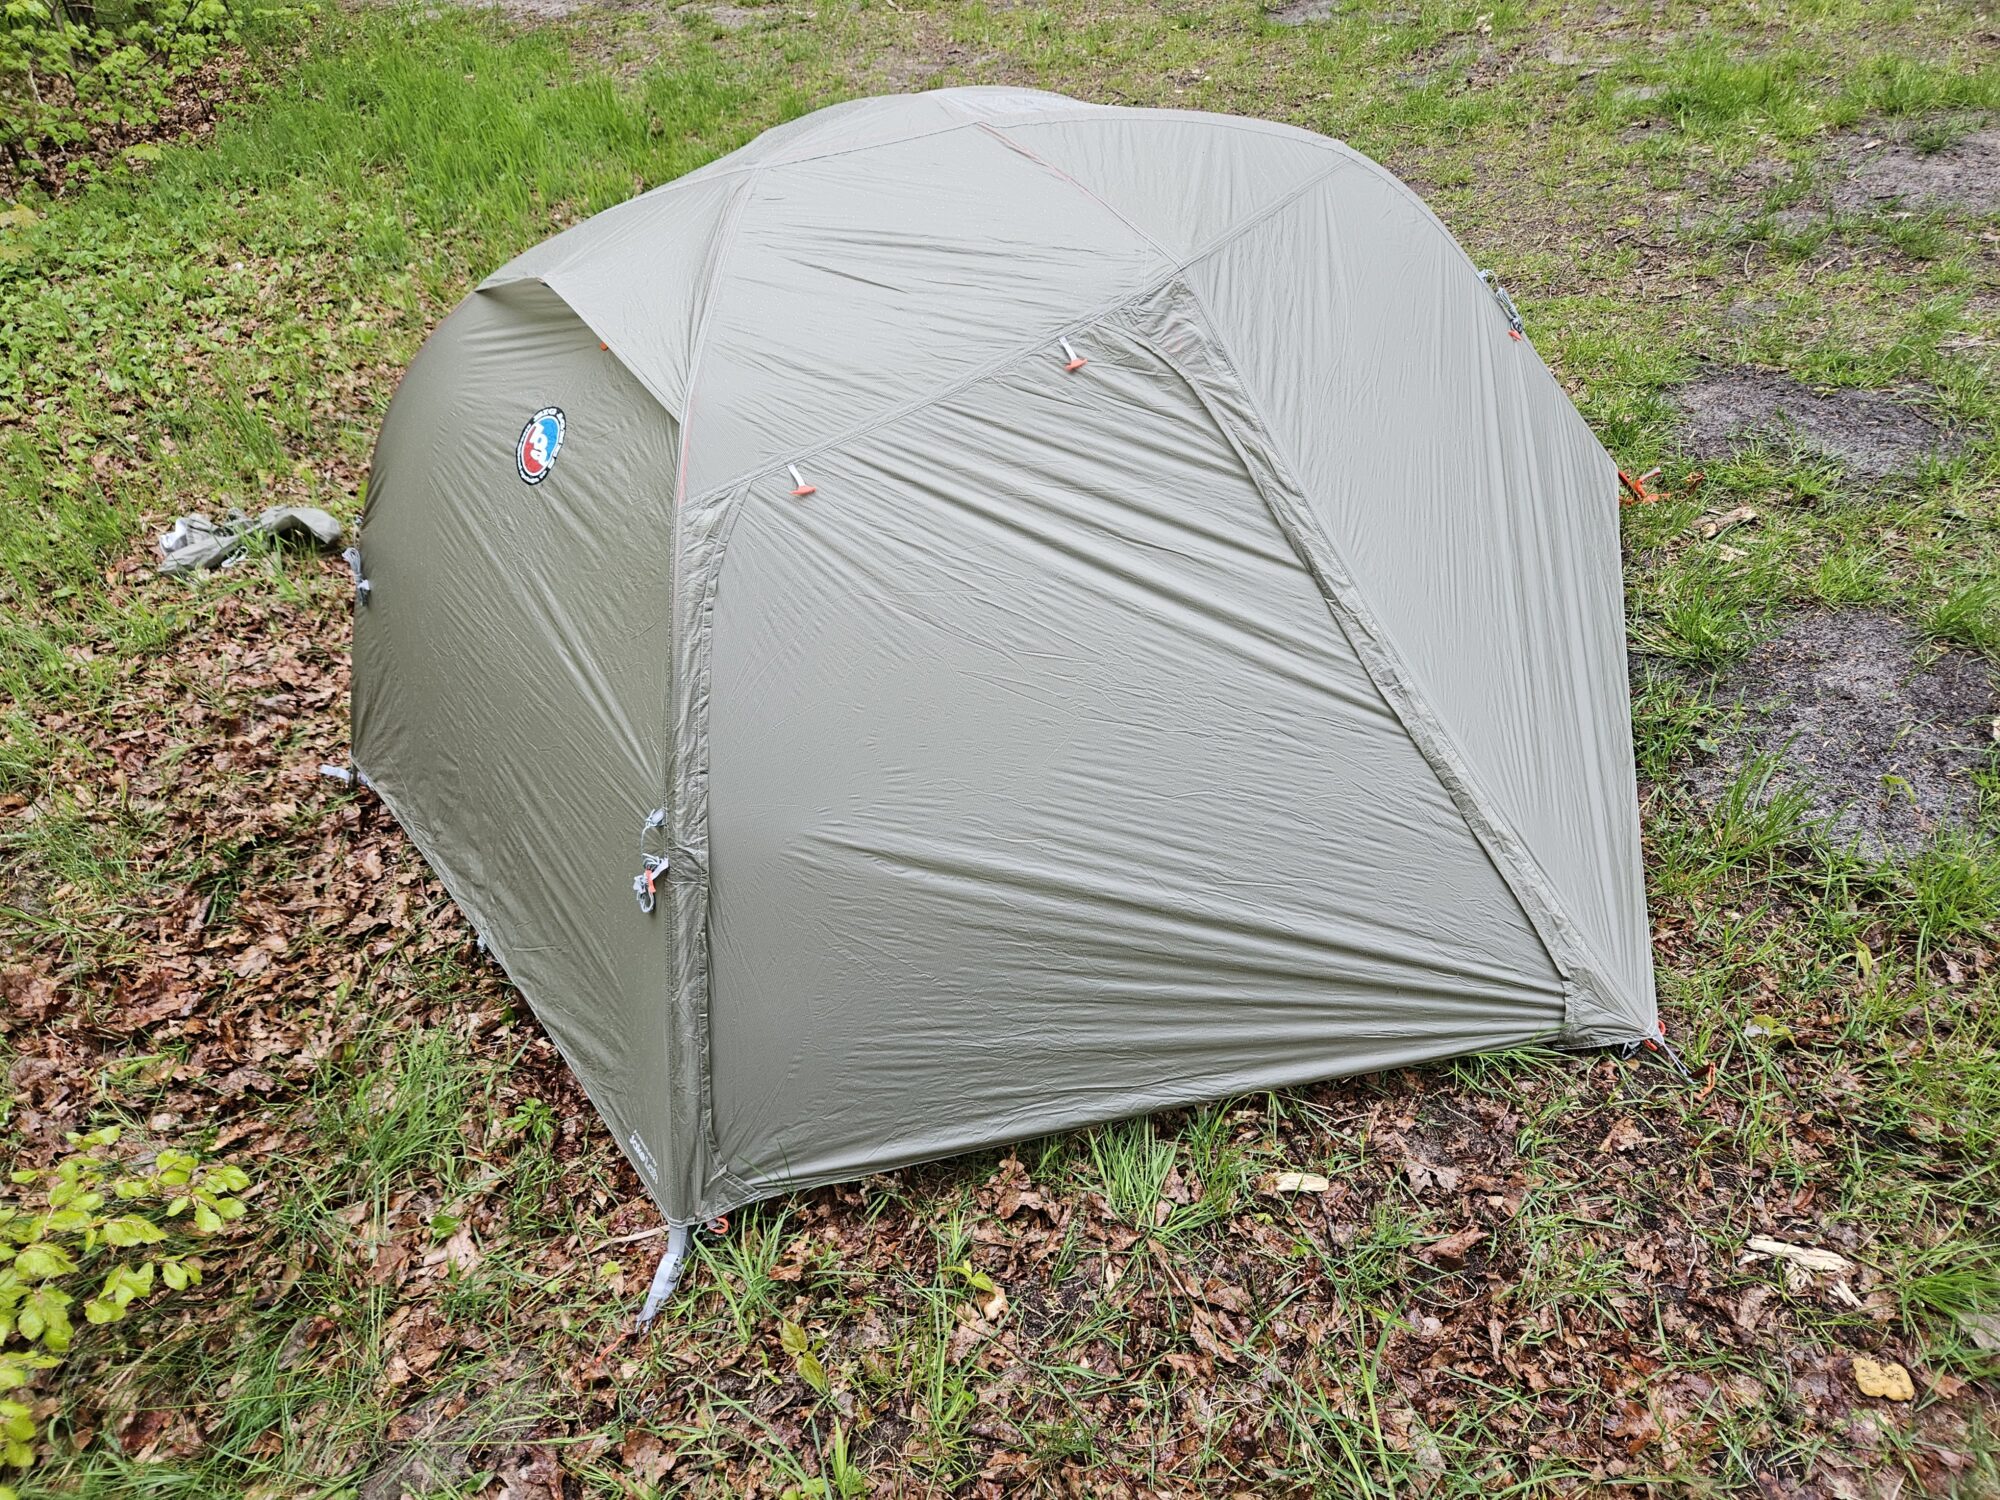 Bryła namiotu przypomina półkulę i dobrze znosi wiatr z różnych kierunków.